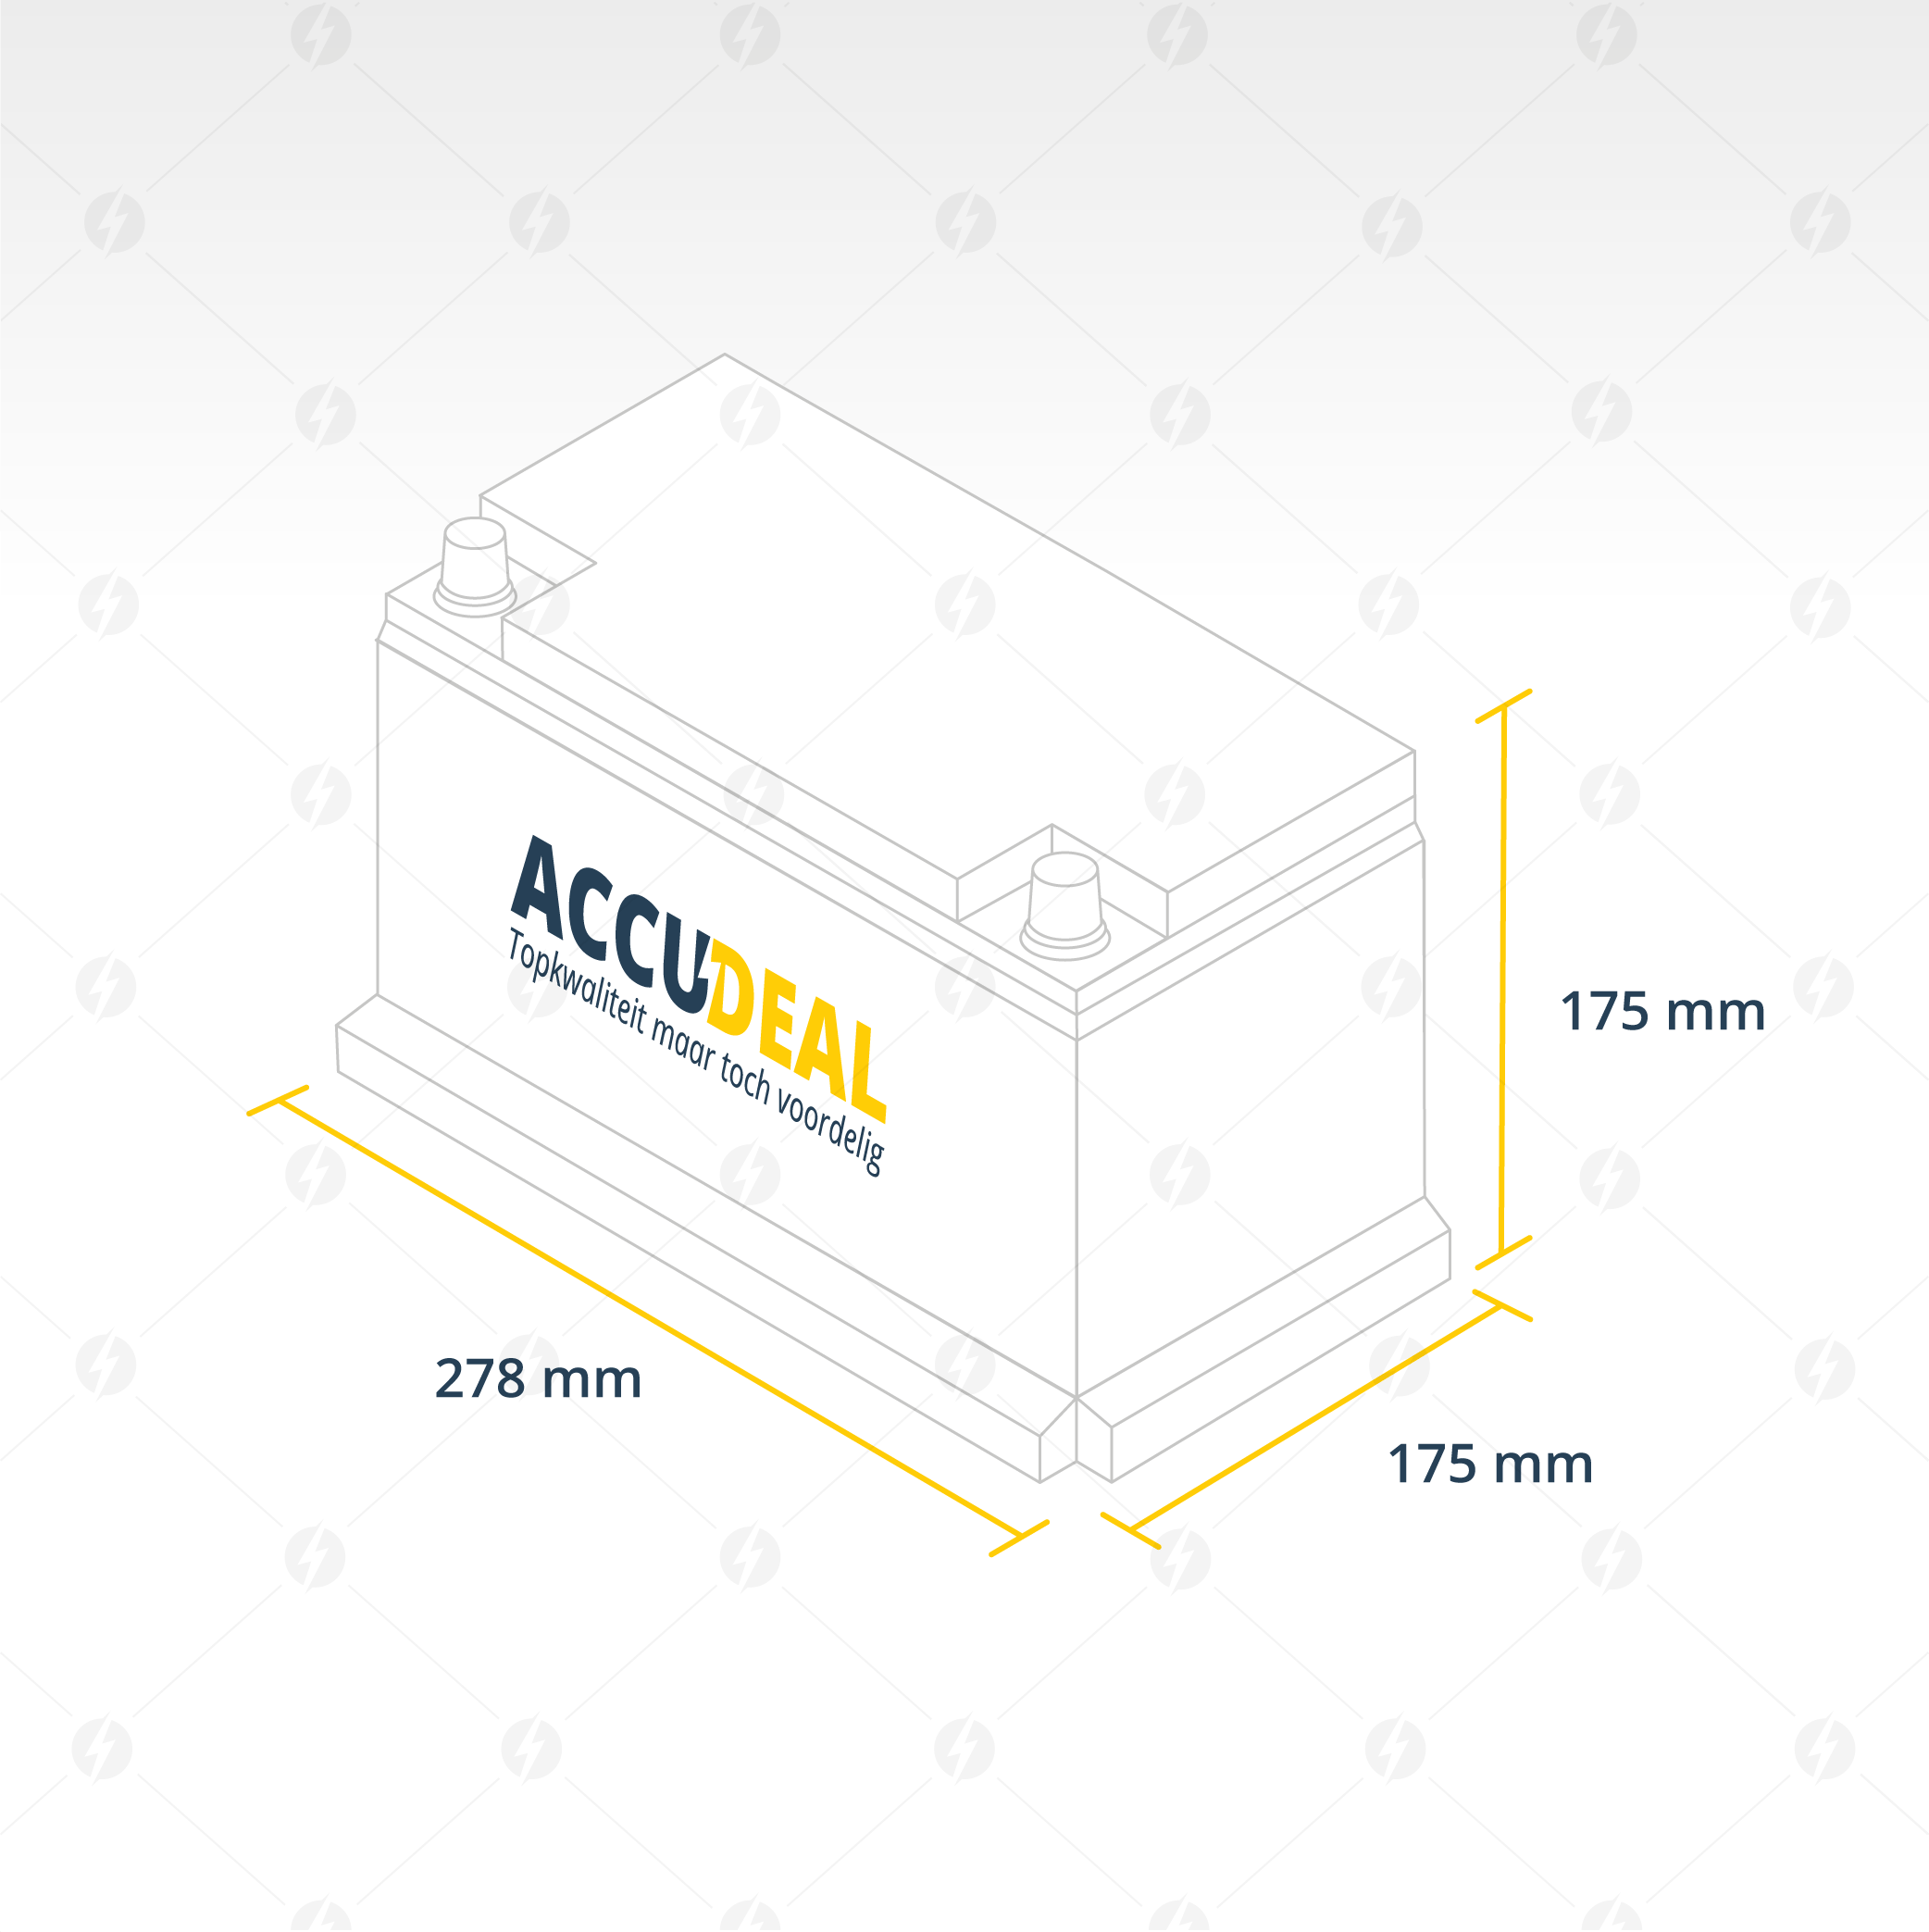 Bosch S4007 - 72Ah accu, 680A, 12V (0 092 S40 070) - Accudeal